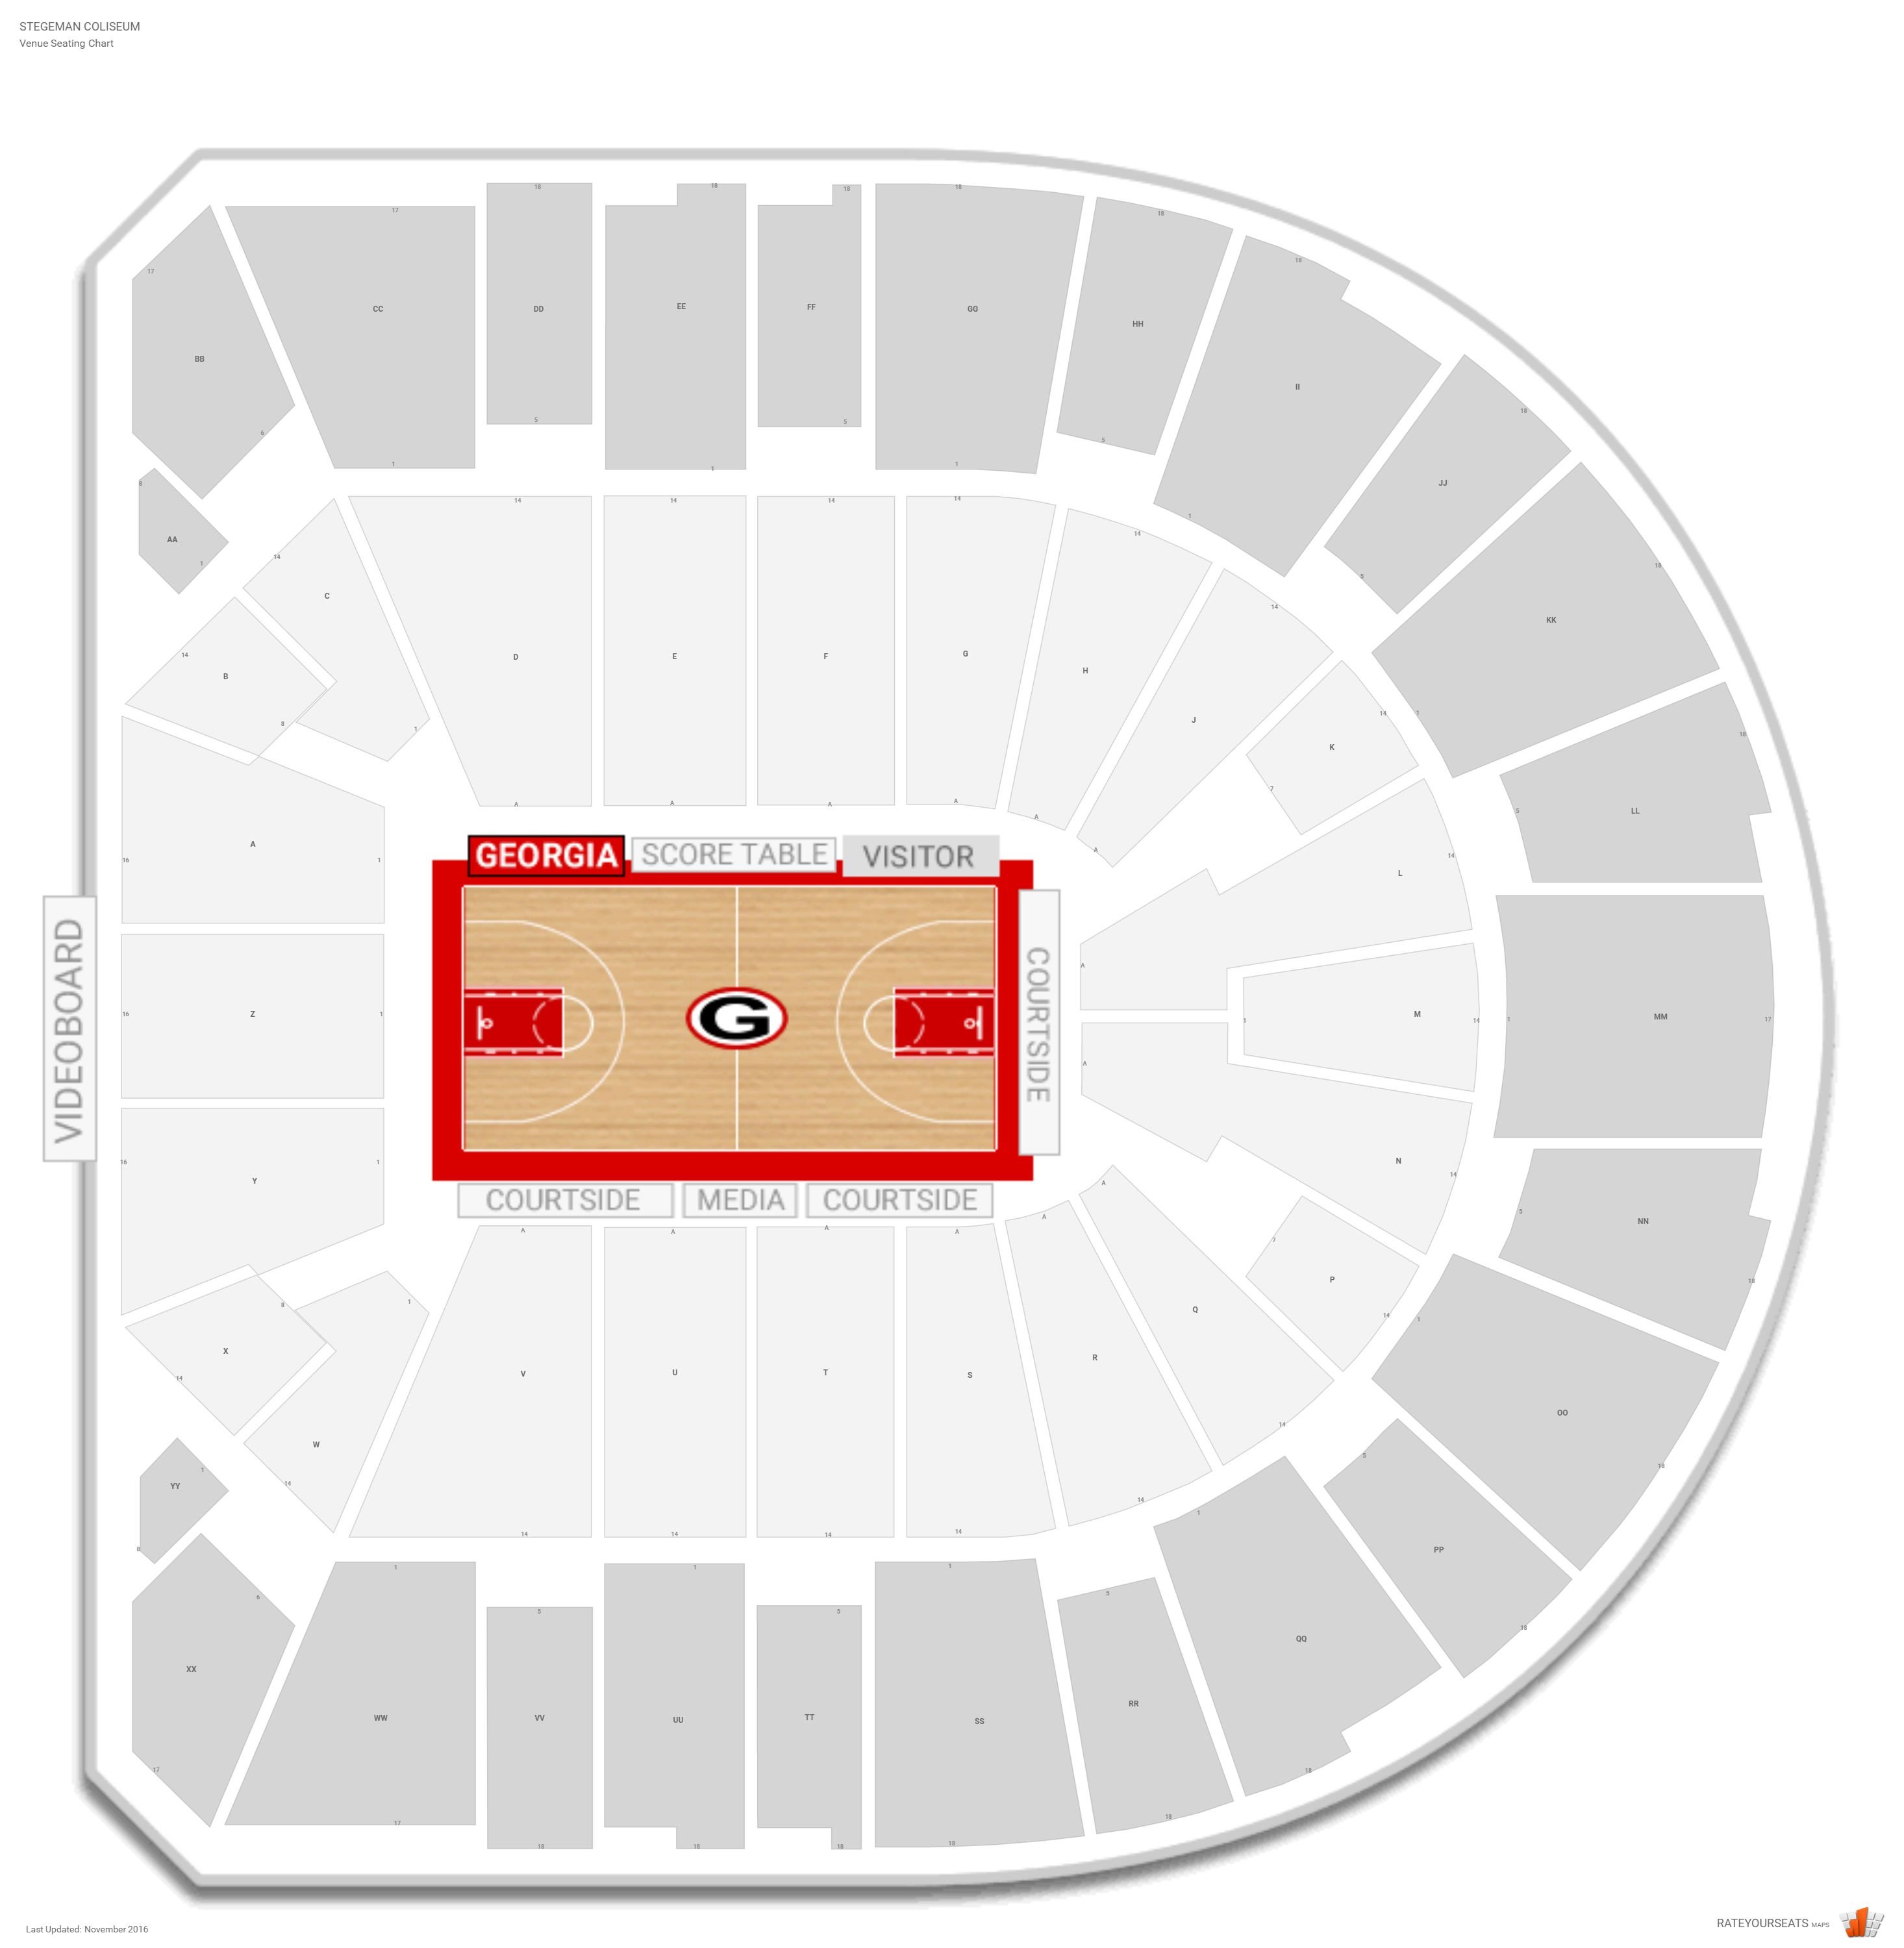 Uga Basketball Seating Chart